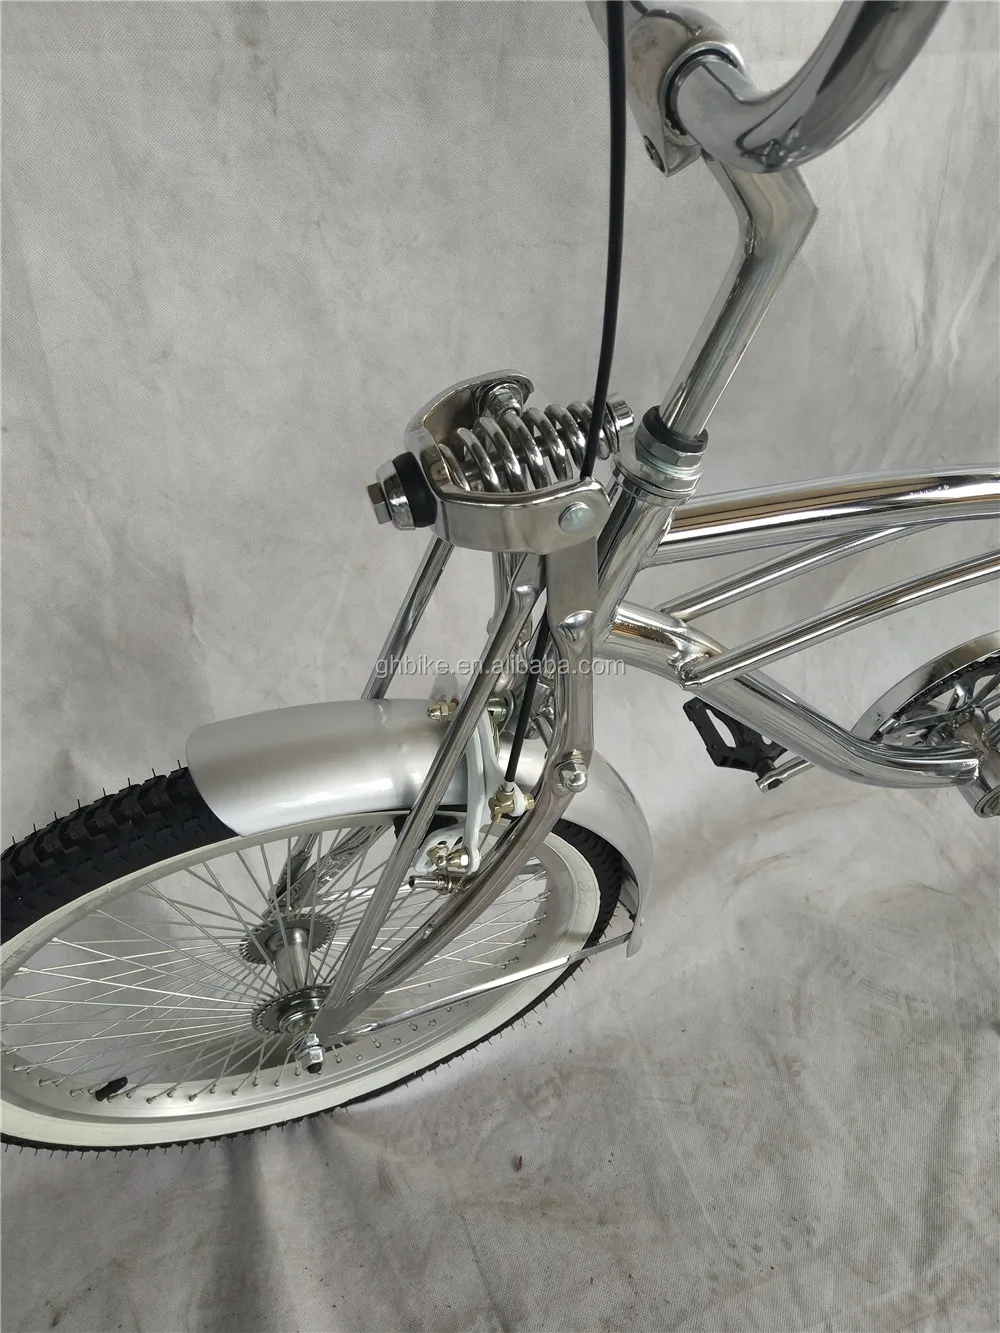 20 inch standard springer fork lowrider bike